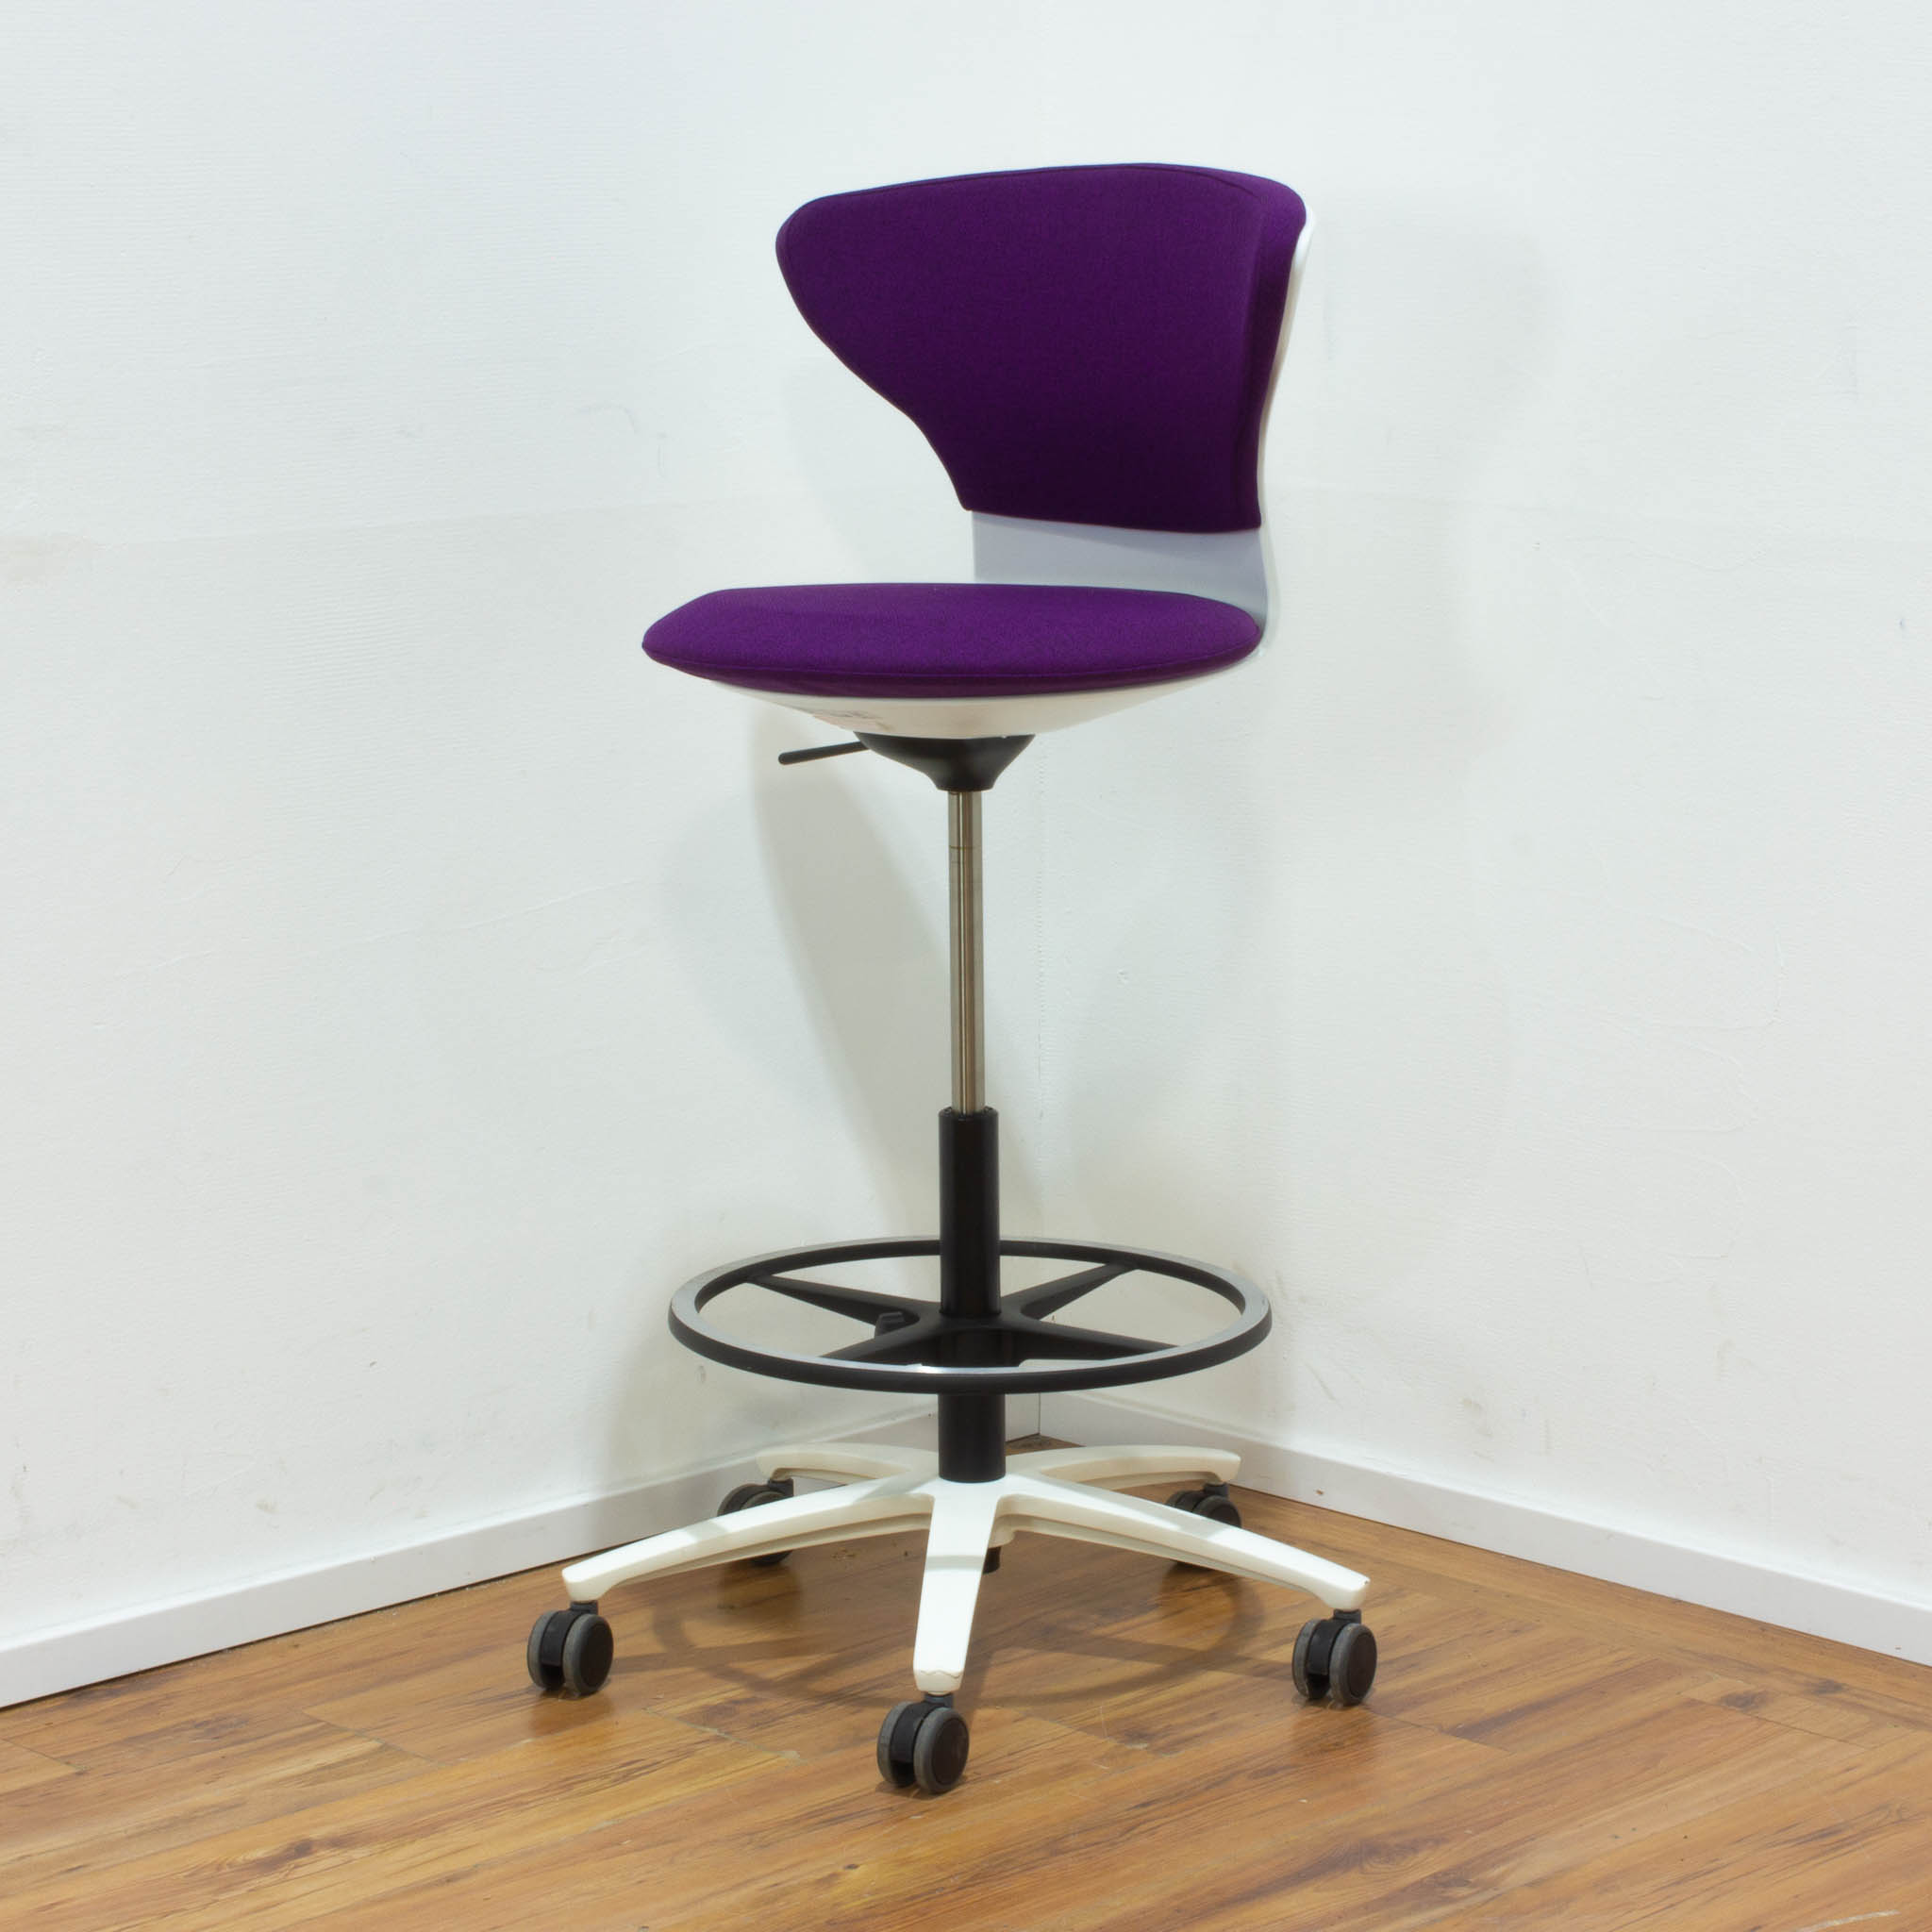 Sedus "Turn Around" High Desk Chair - violett